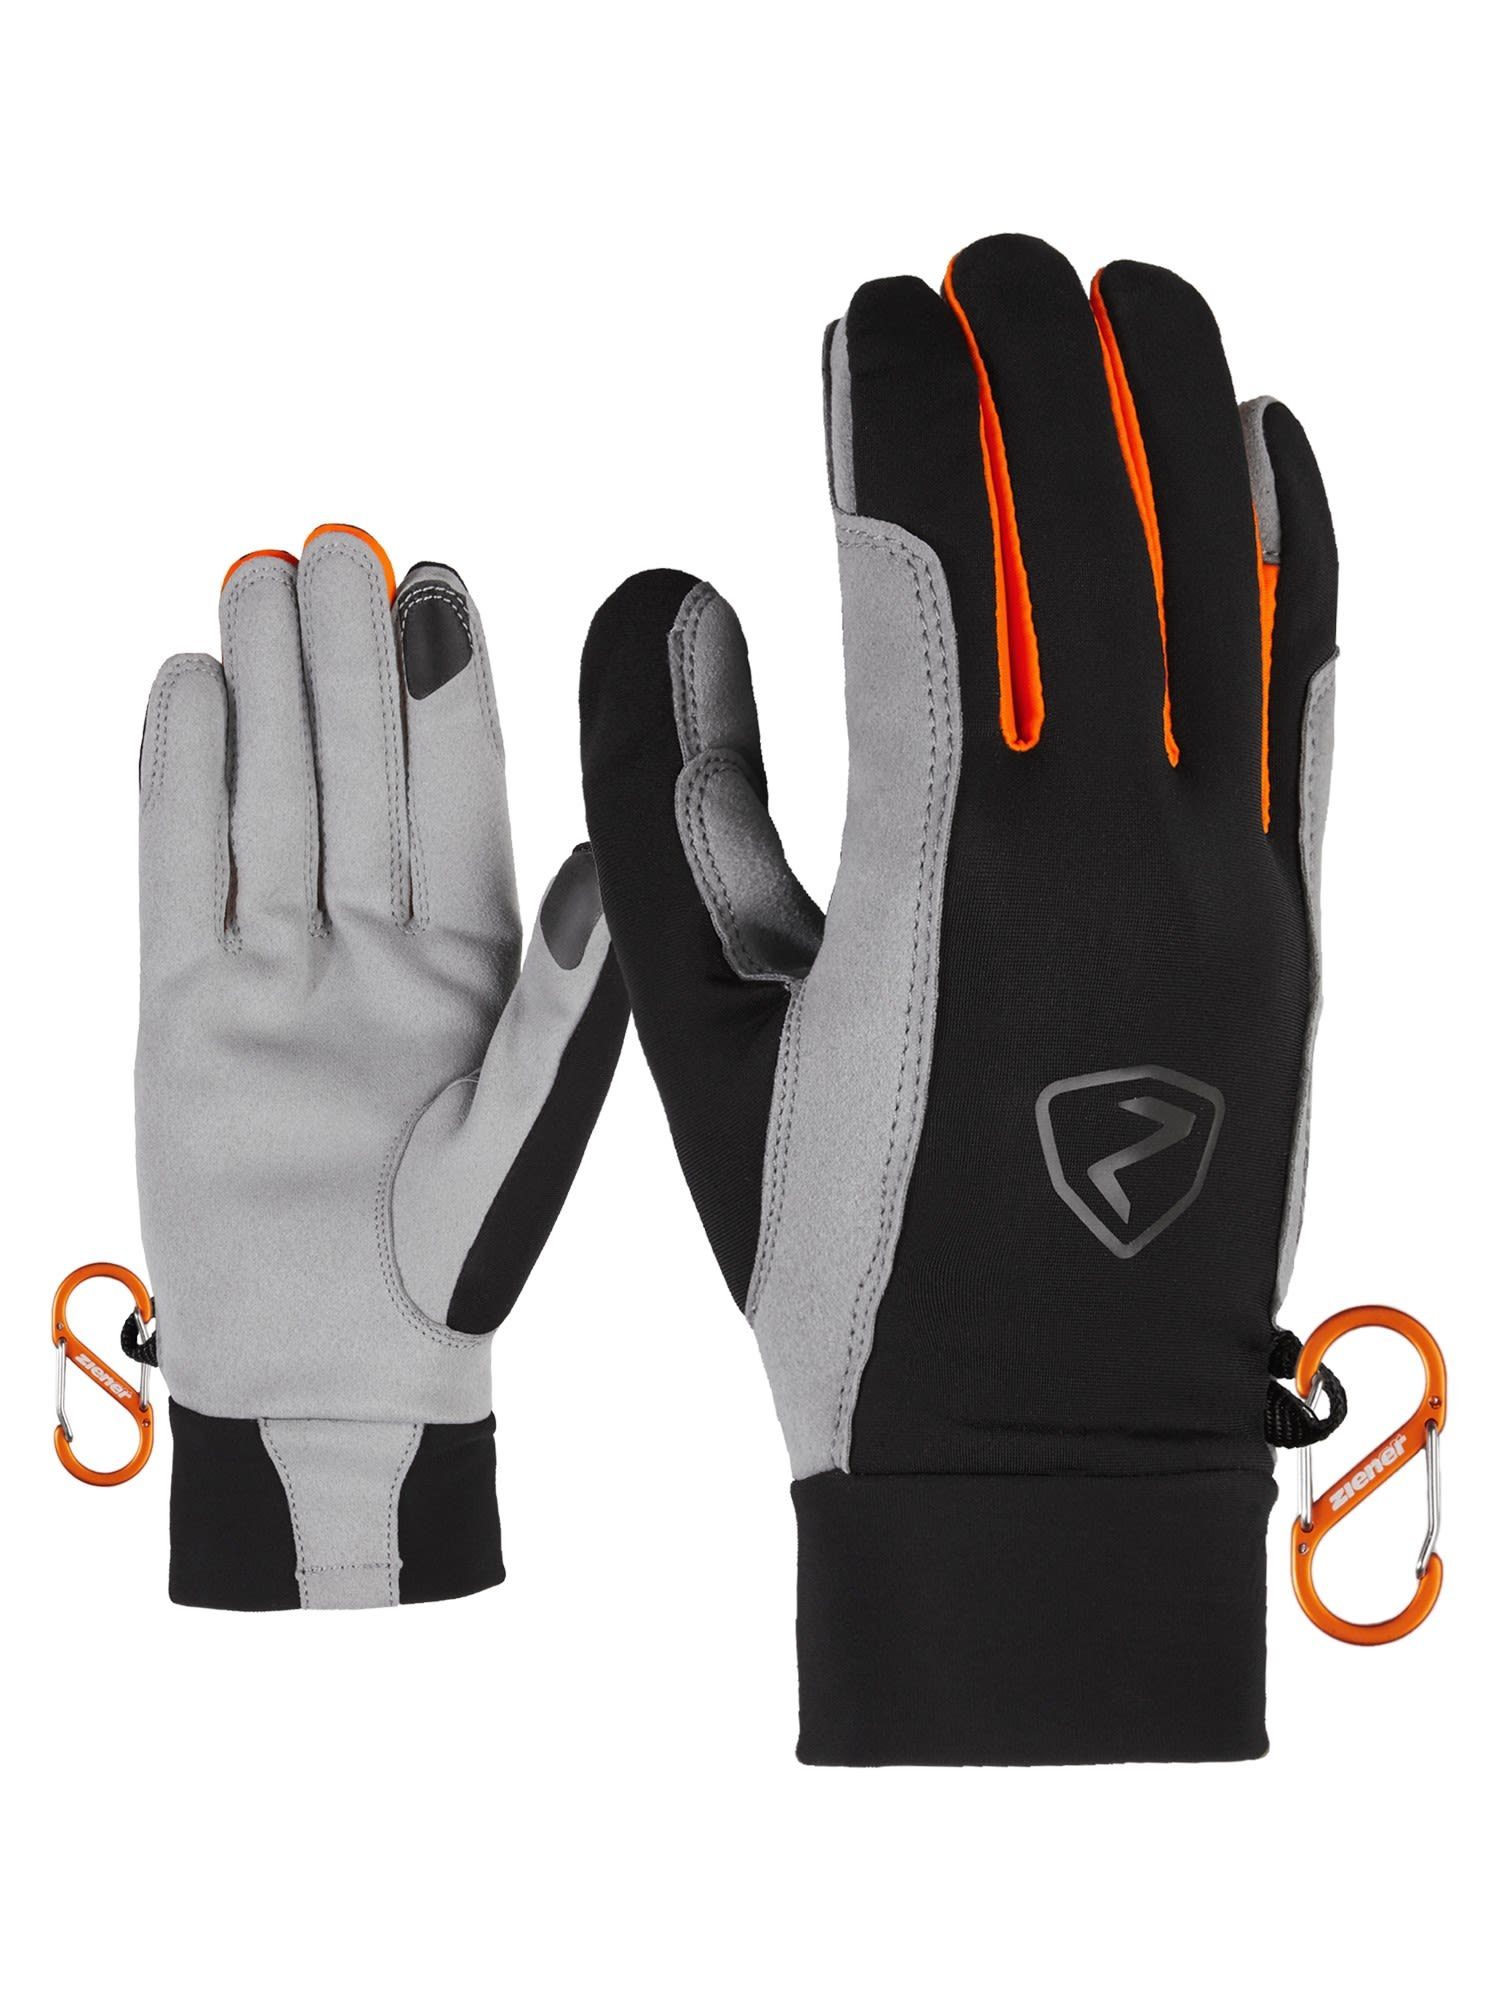 Fleecehandschuhe Touch Ziener Orange Gysmo New Ziener Glove Black - Accessoires